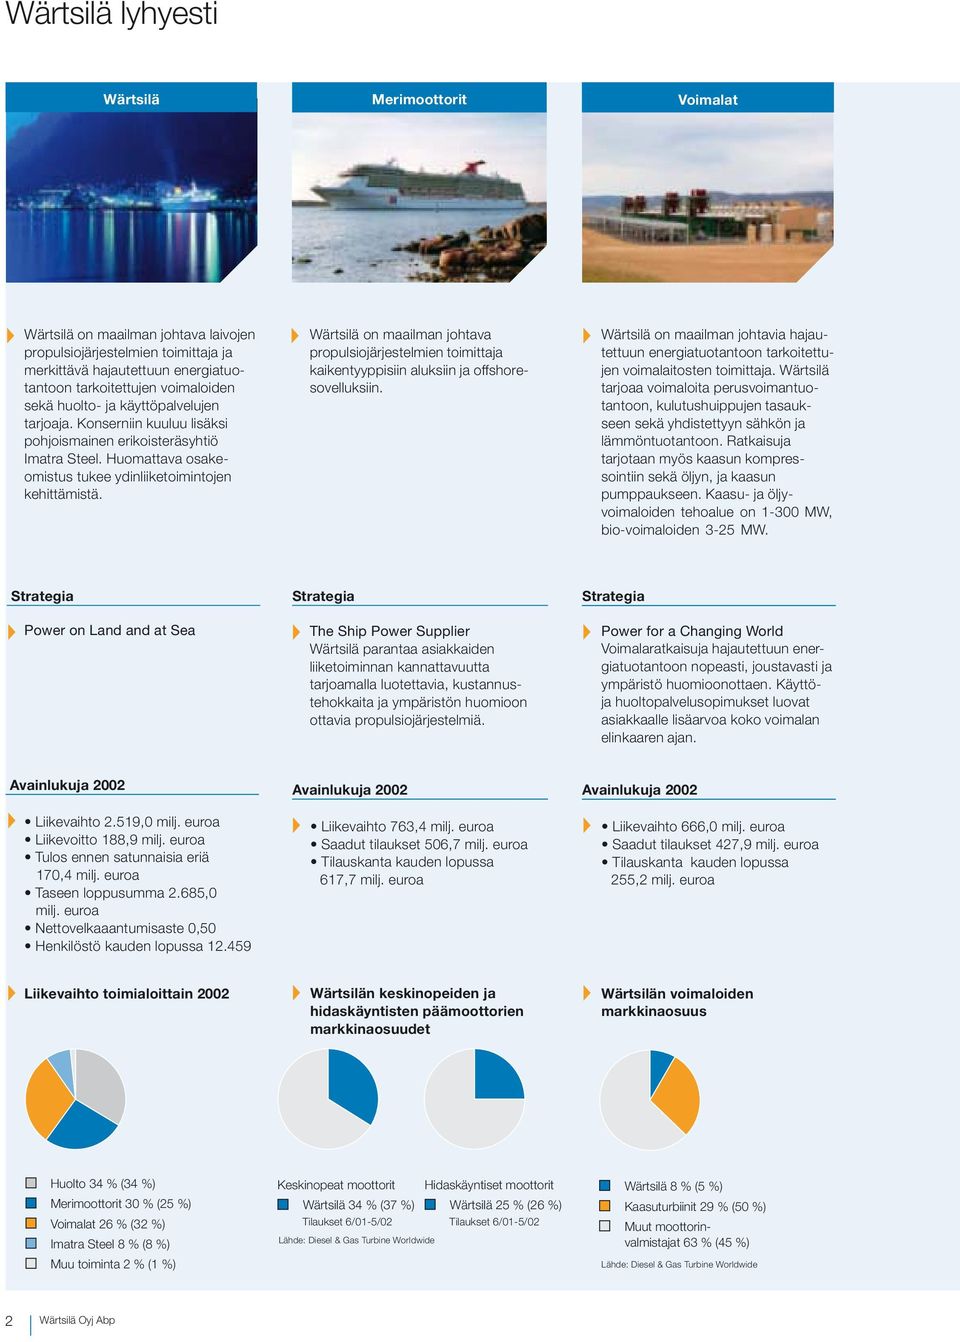 Wärtsilä on maailman johtava propulsiojärjestelmien toimittaja kaikentyyppisiin aluksiin ja offshoresovelluksiin.